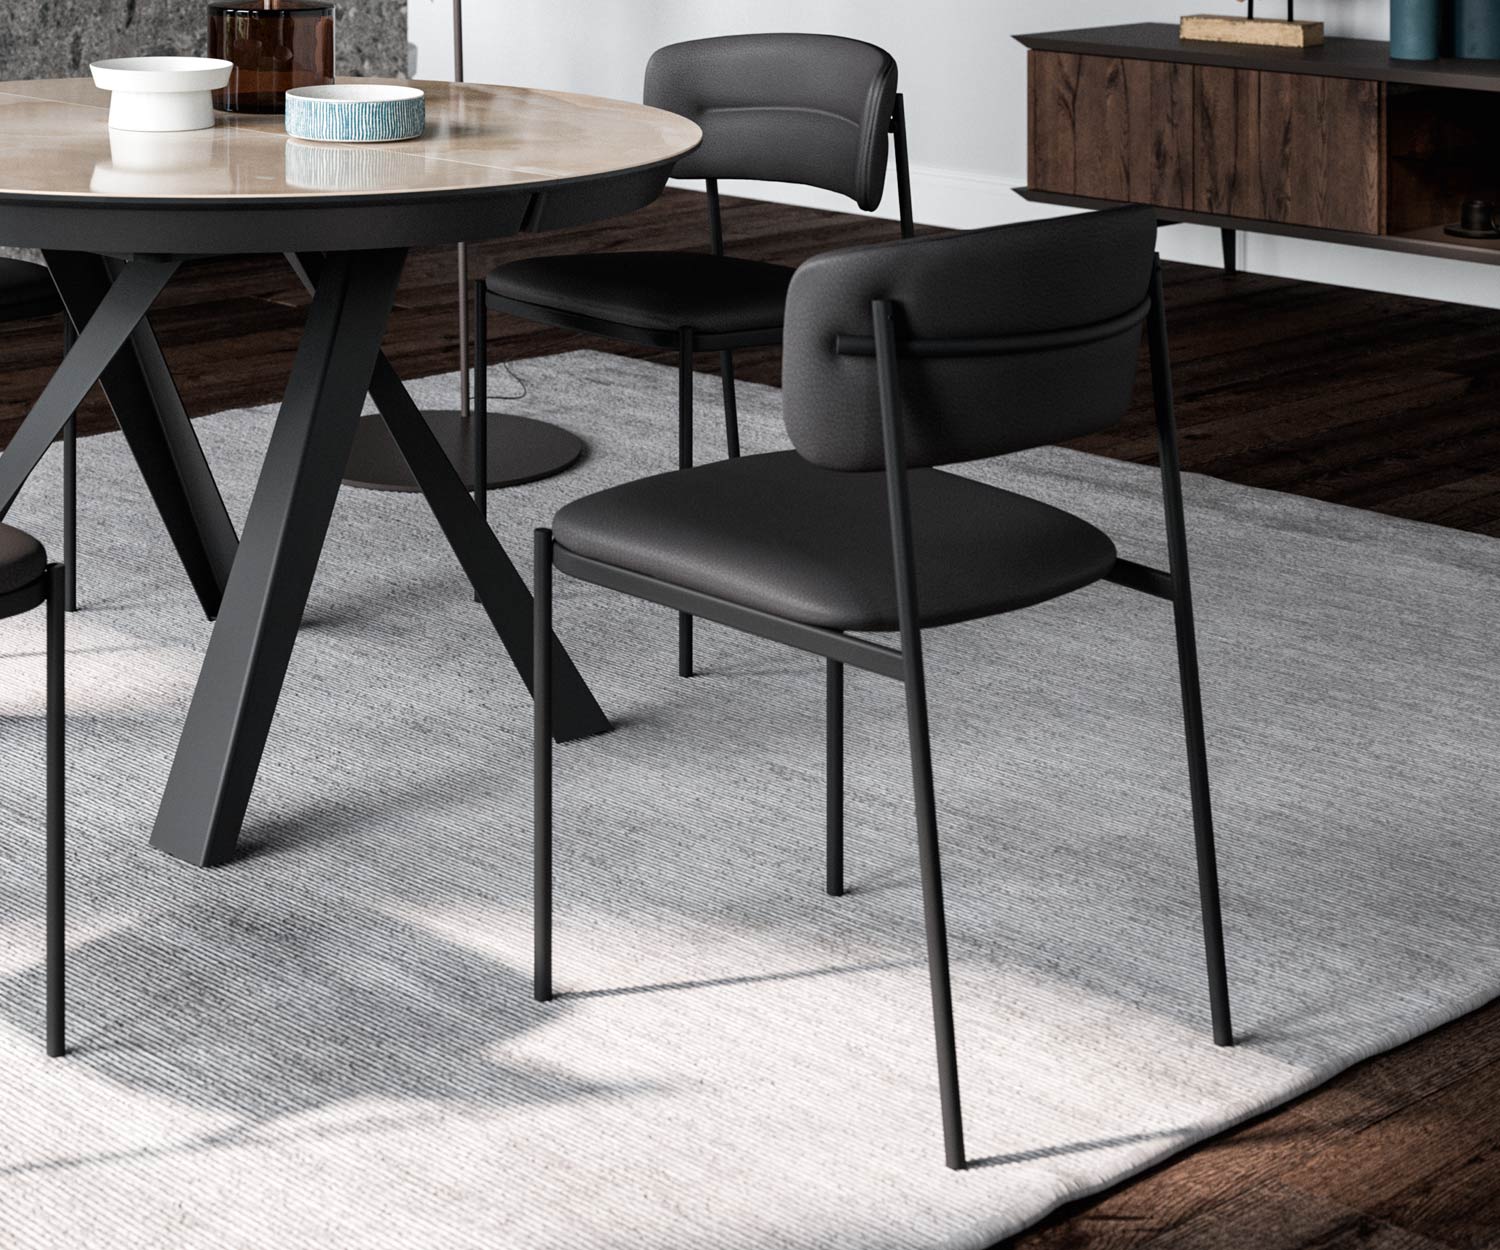 Design metalen beklede stoel met zwart leren rugleuning